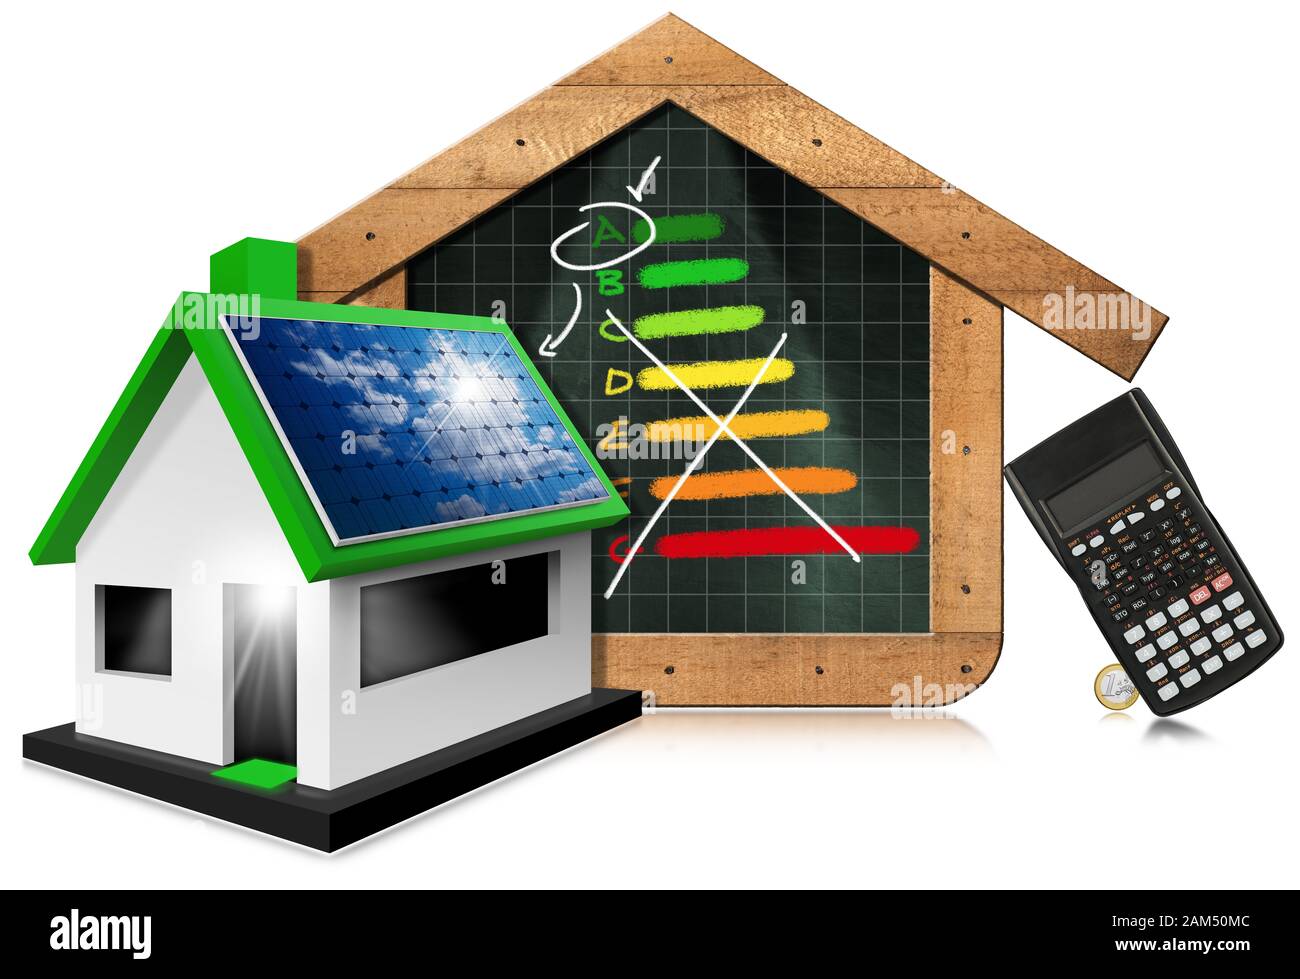 3D-Darstellung eines Modellhauses mit Solarpanel, Rechner, Euro-Währung und Kreidezeichnung eines Energieleistungstabels auf einer Tafel Stockfoto